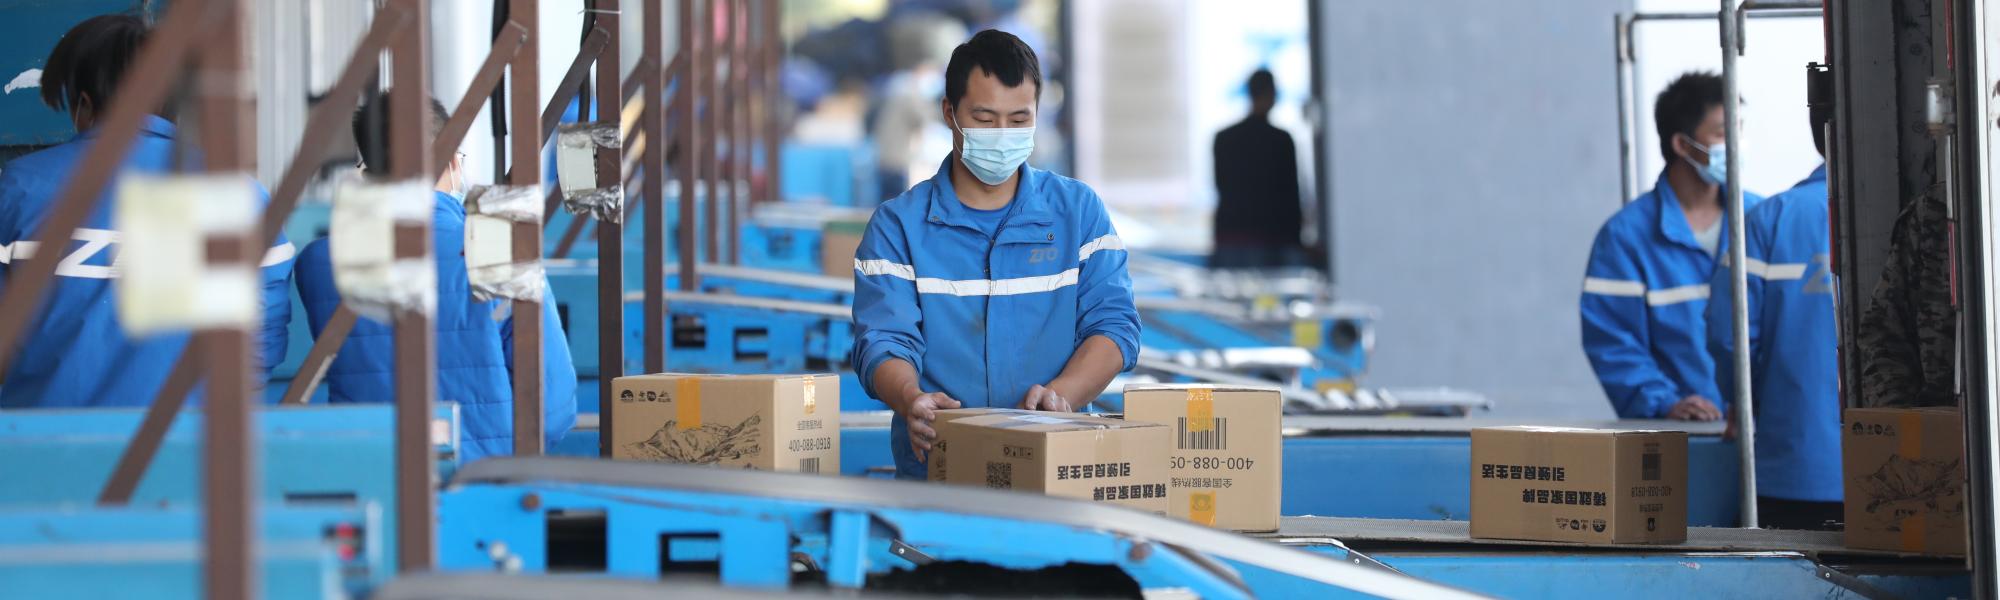 Растущая электронная торговля Китая использует преимущества МДП